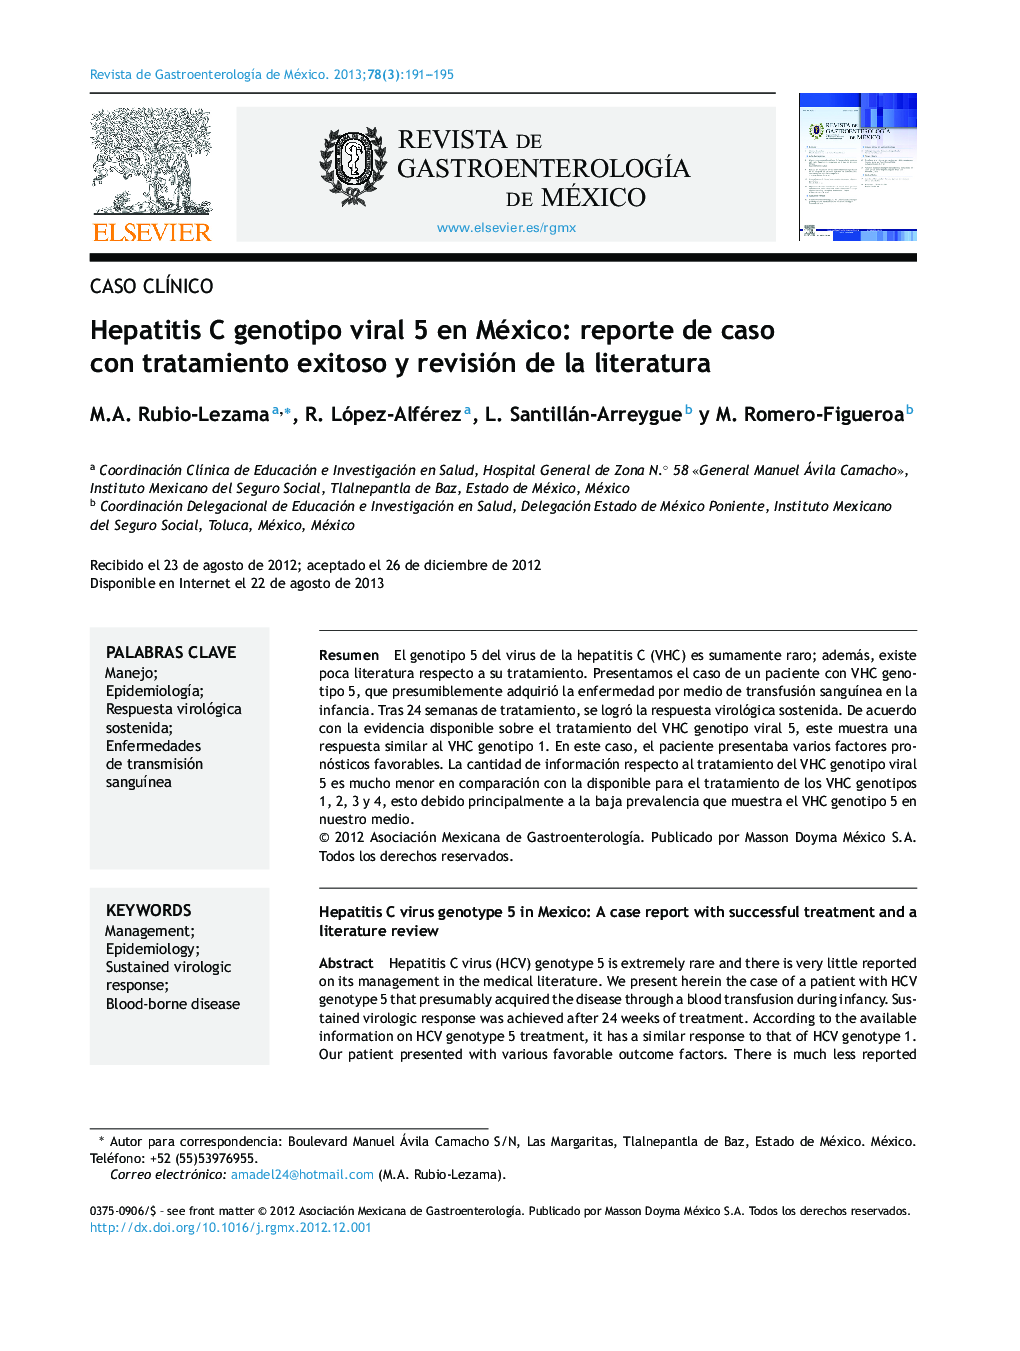 Hepatitis C genotipo viral 5 en México: reporte de caso con tratamiento exitoso y revisión de la literatura